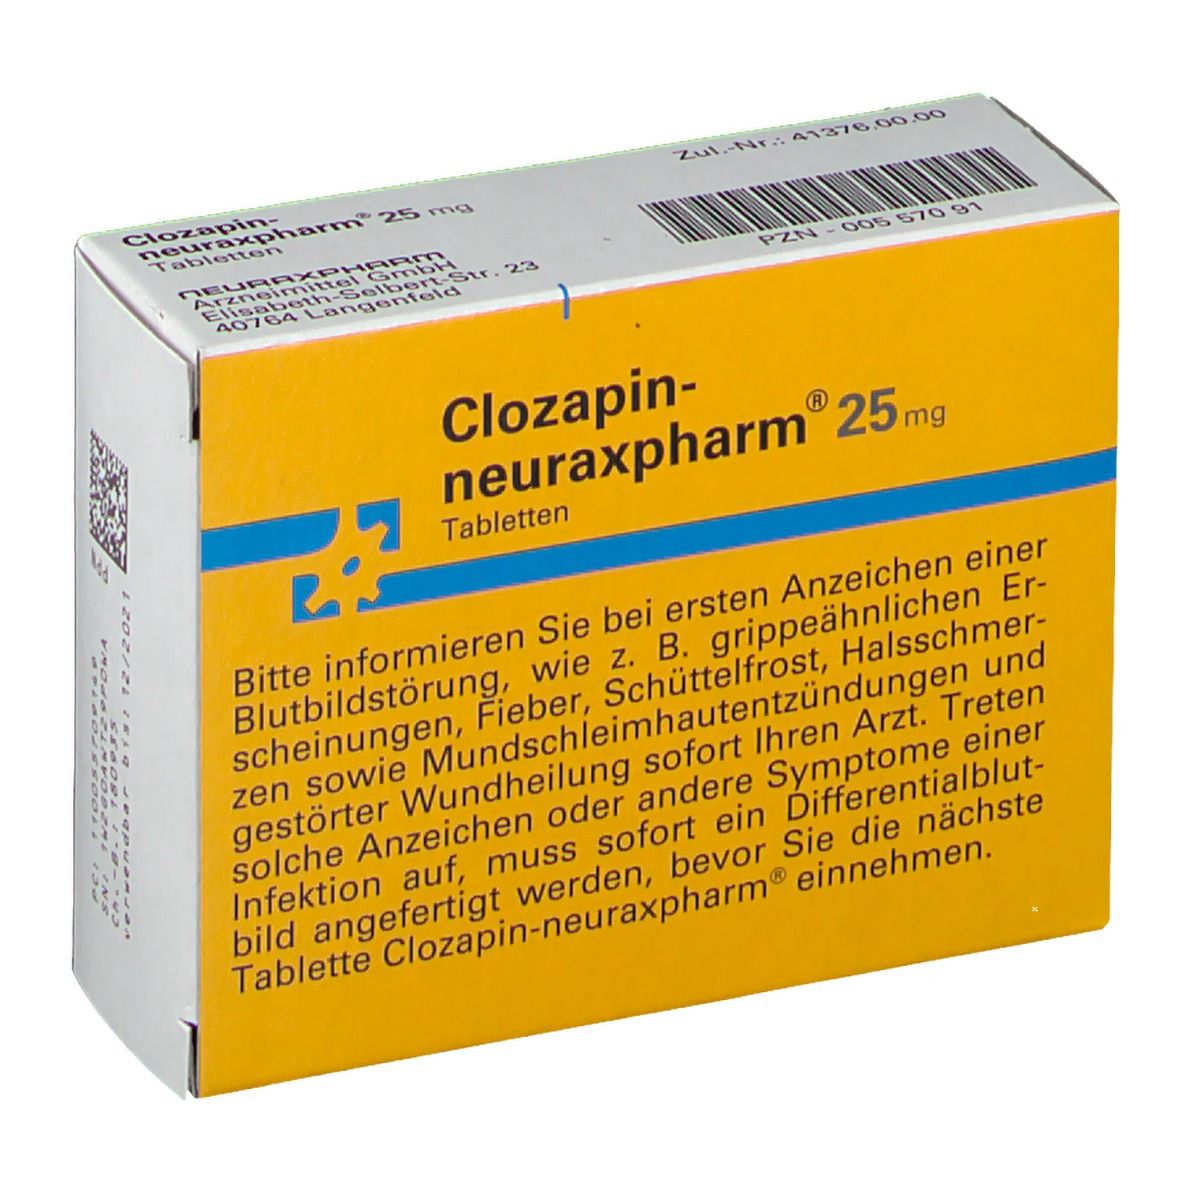 Clozapin-neuraxpharm® 25 mg